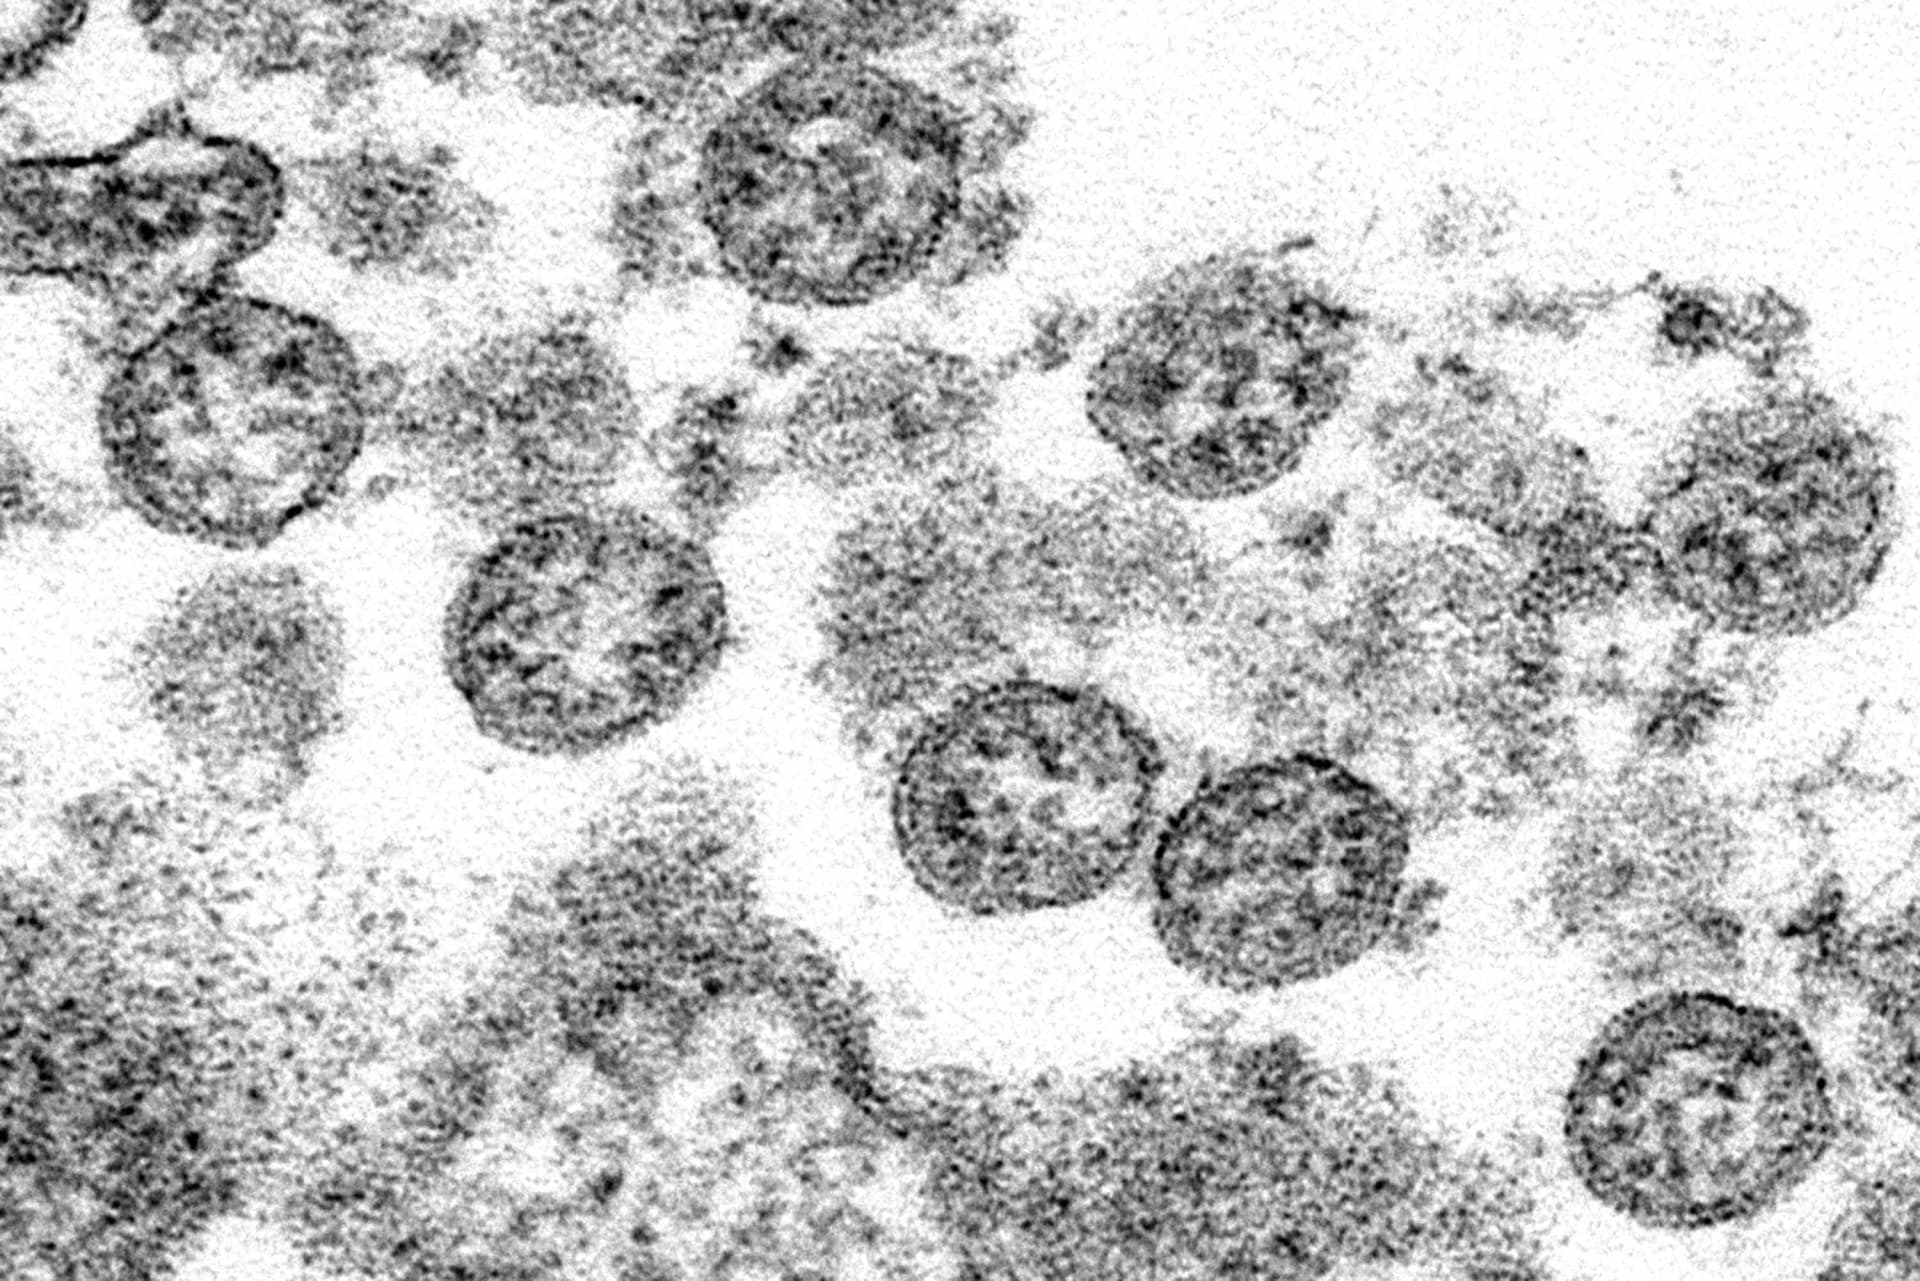 نتائج مبكرة من تجربة لقاح فيروس كورونا تنتجه "مودرنا" يظهر أن المشاركين طوروا أجساما مضادة للفيروس